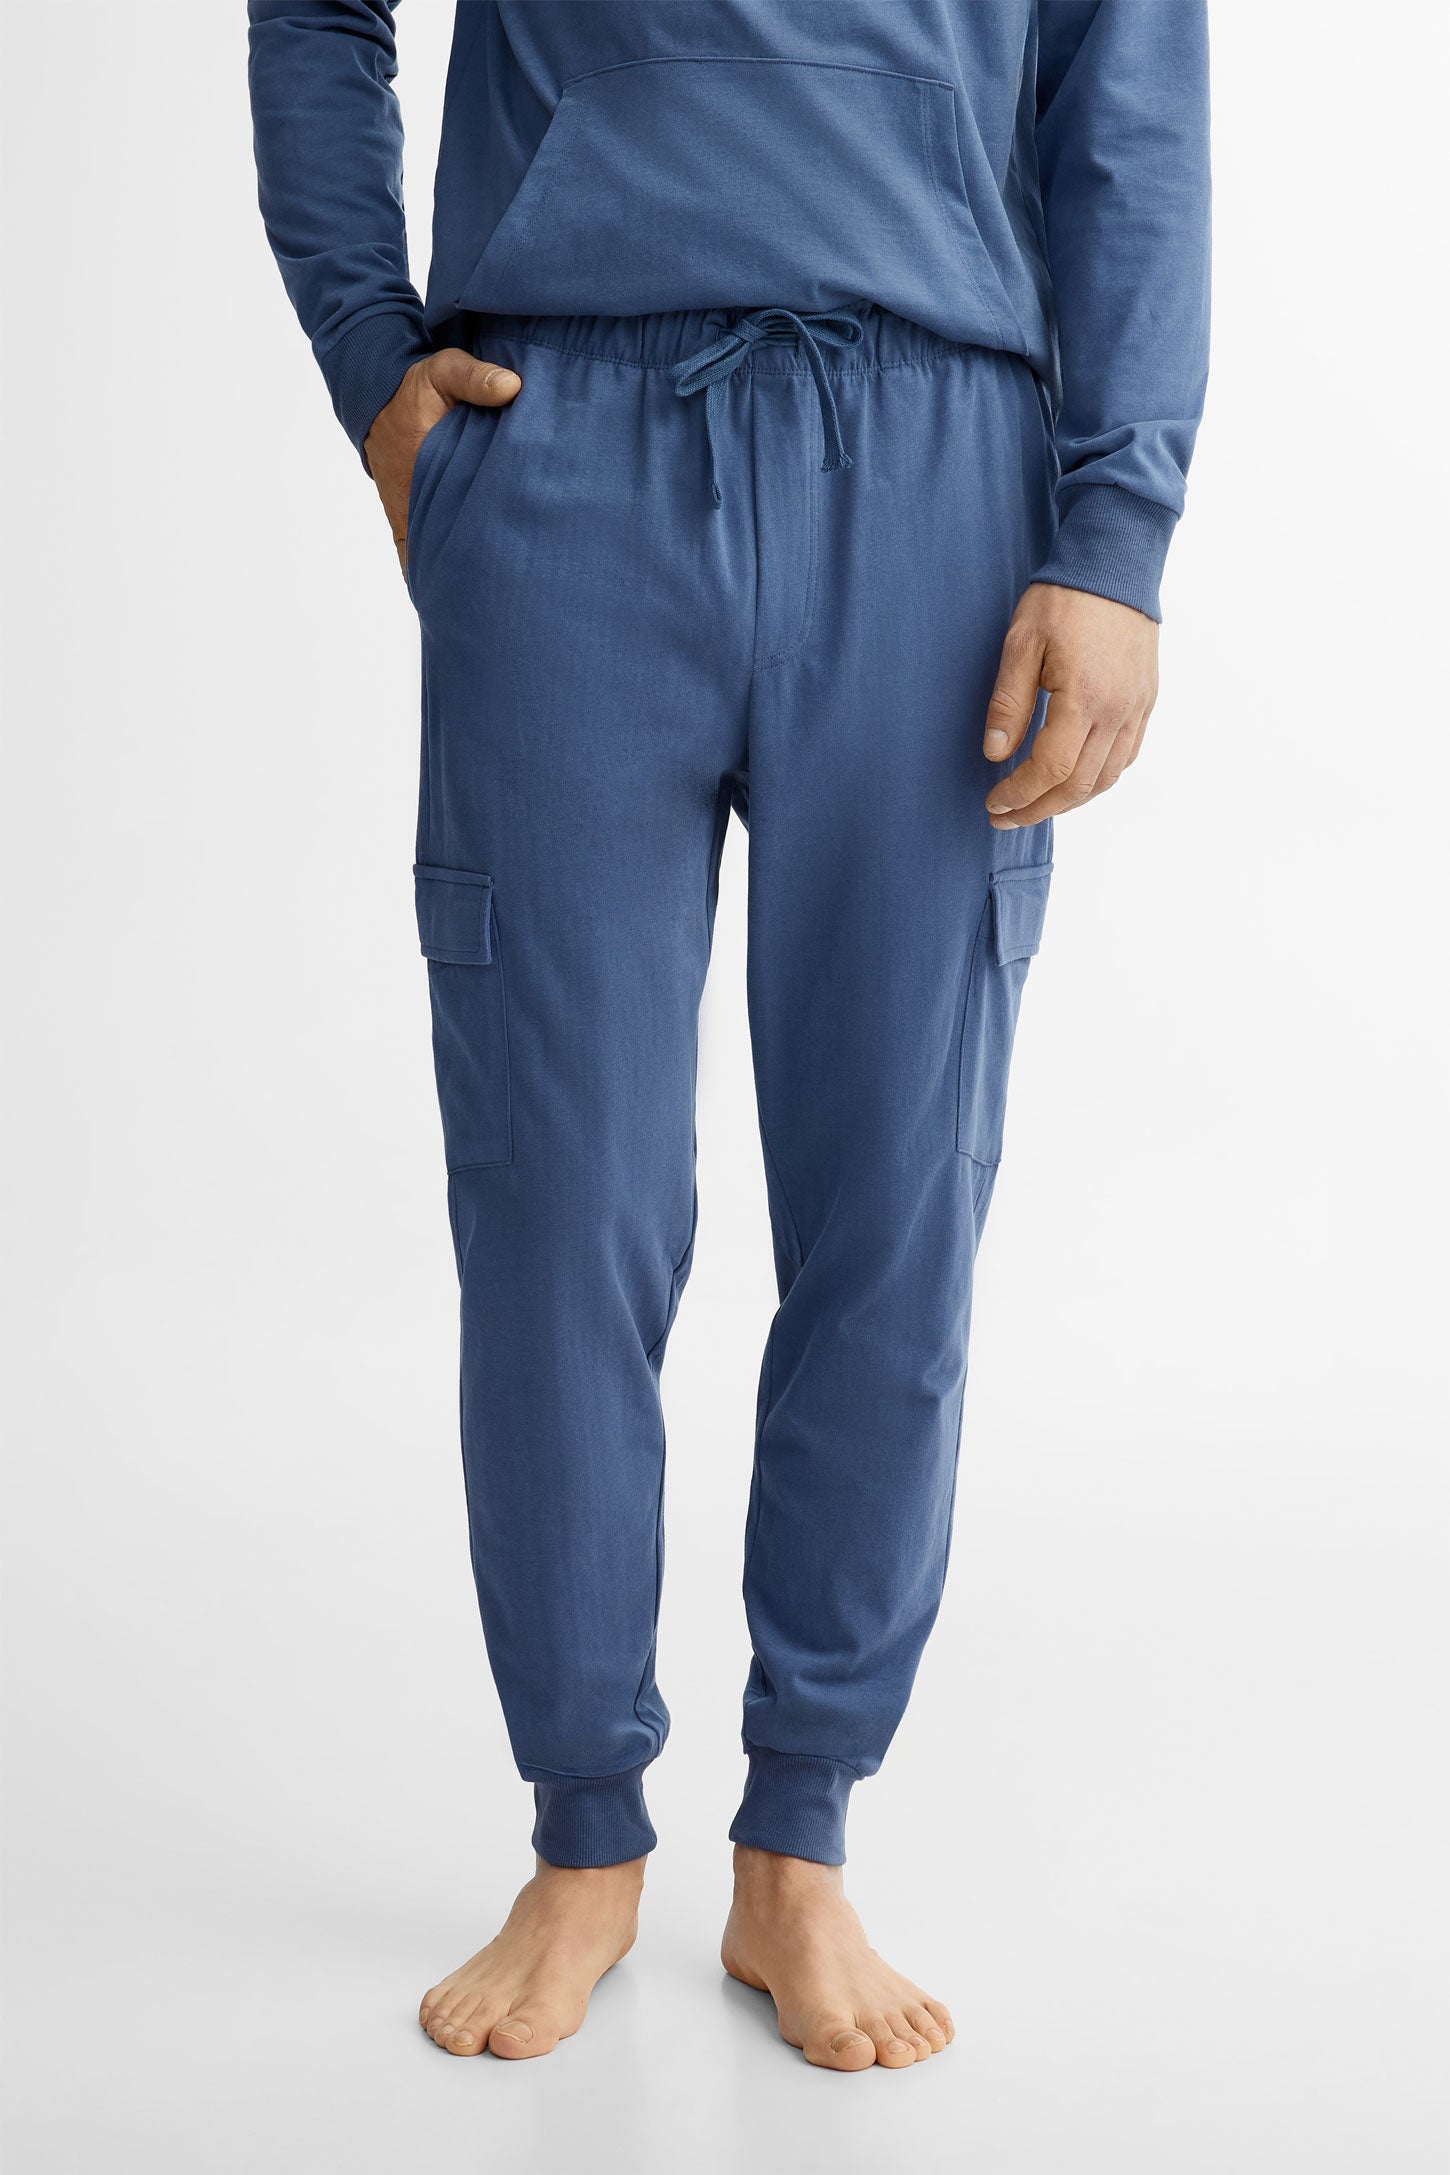 Pantalon jogger pyjama - Homme && BLEU